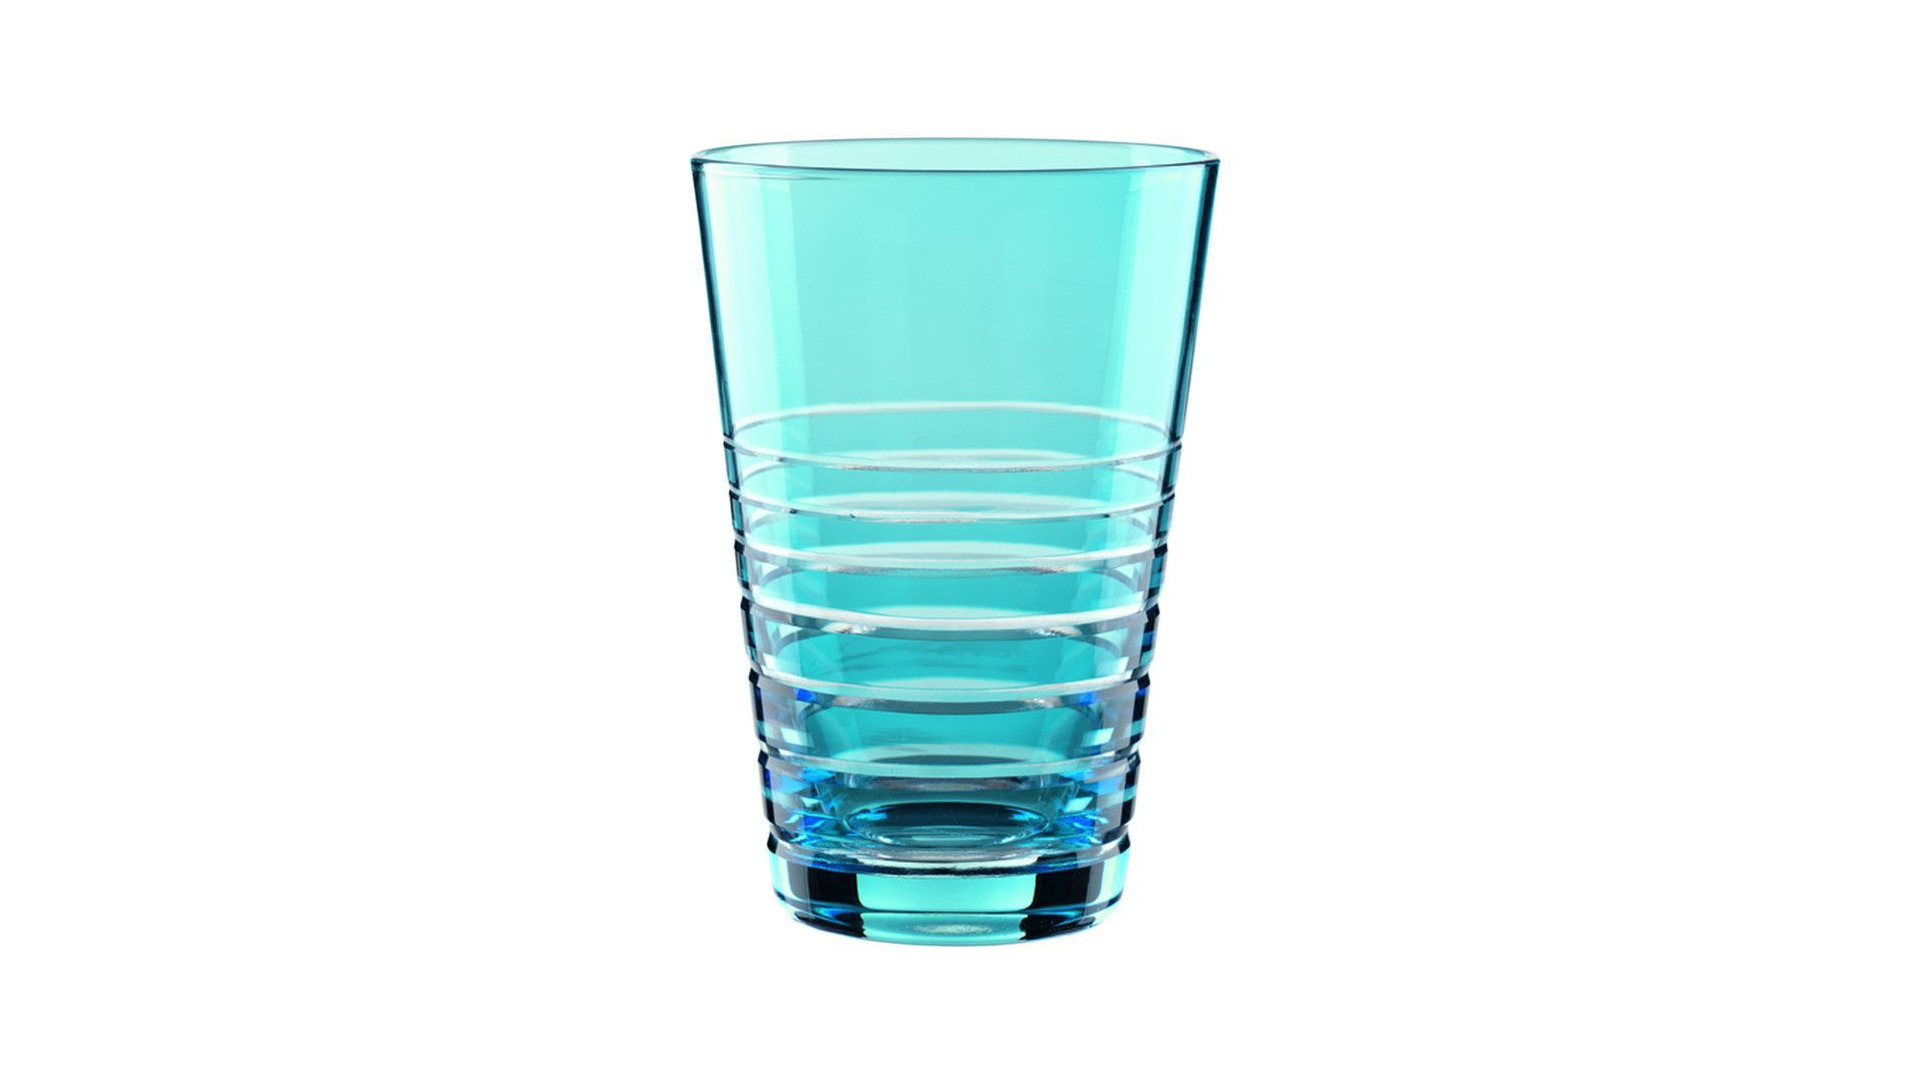 Набор стаканов для воды Nachtmann Rondo Aqua 360 мл, 2 шт, хрусталь